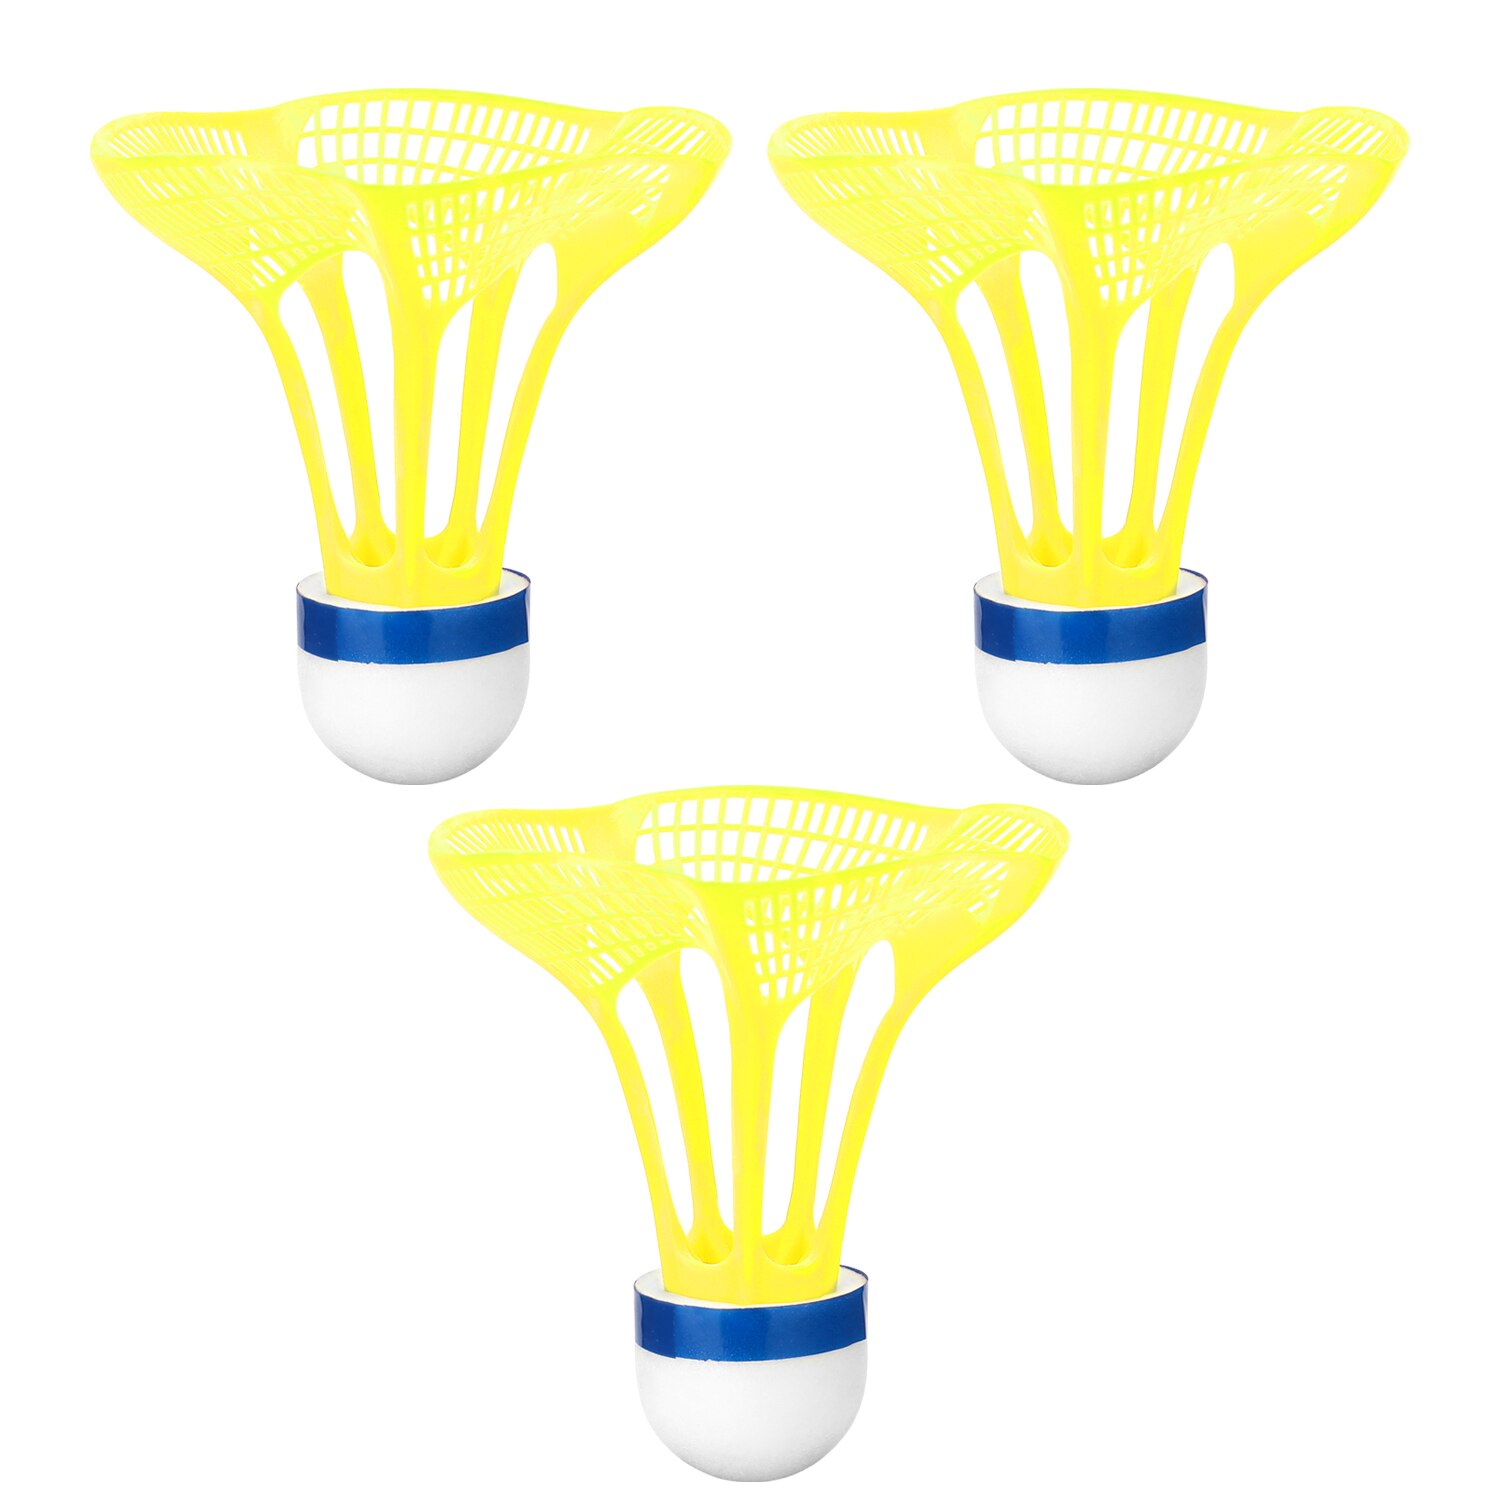 3 stk. udendørs badmintonbold plast airshuttle nylonbold sportstræning træning fjederbuefugle modstand mod vind: Lysegul